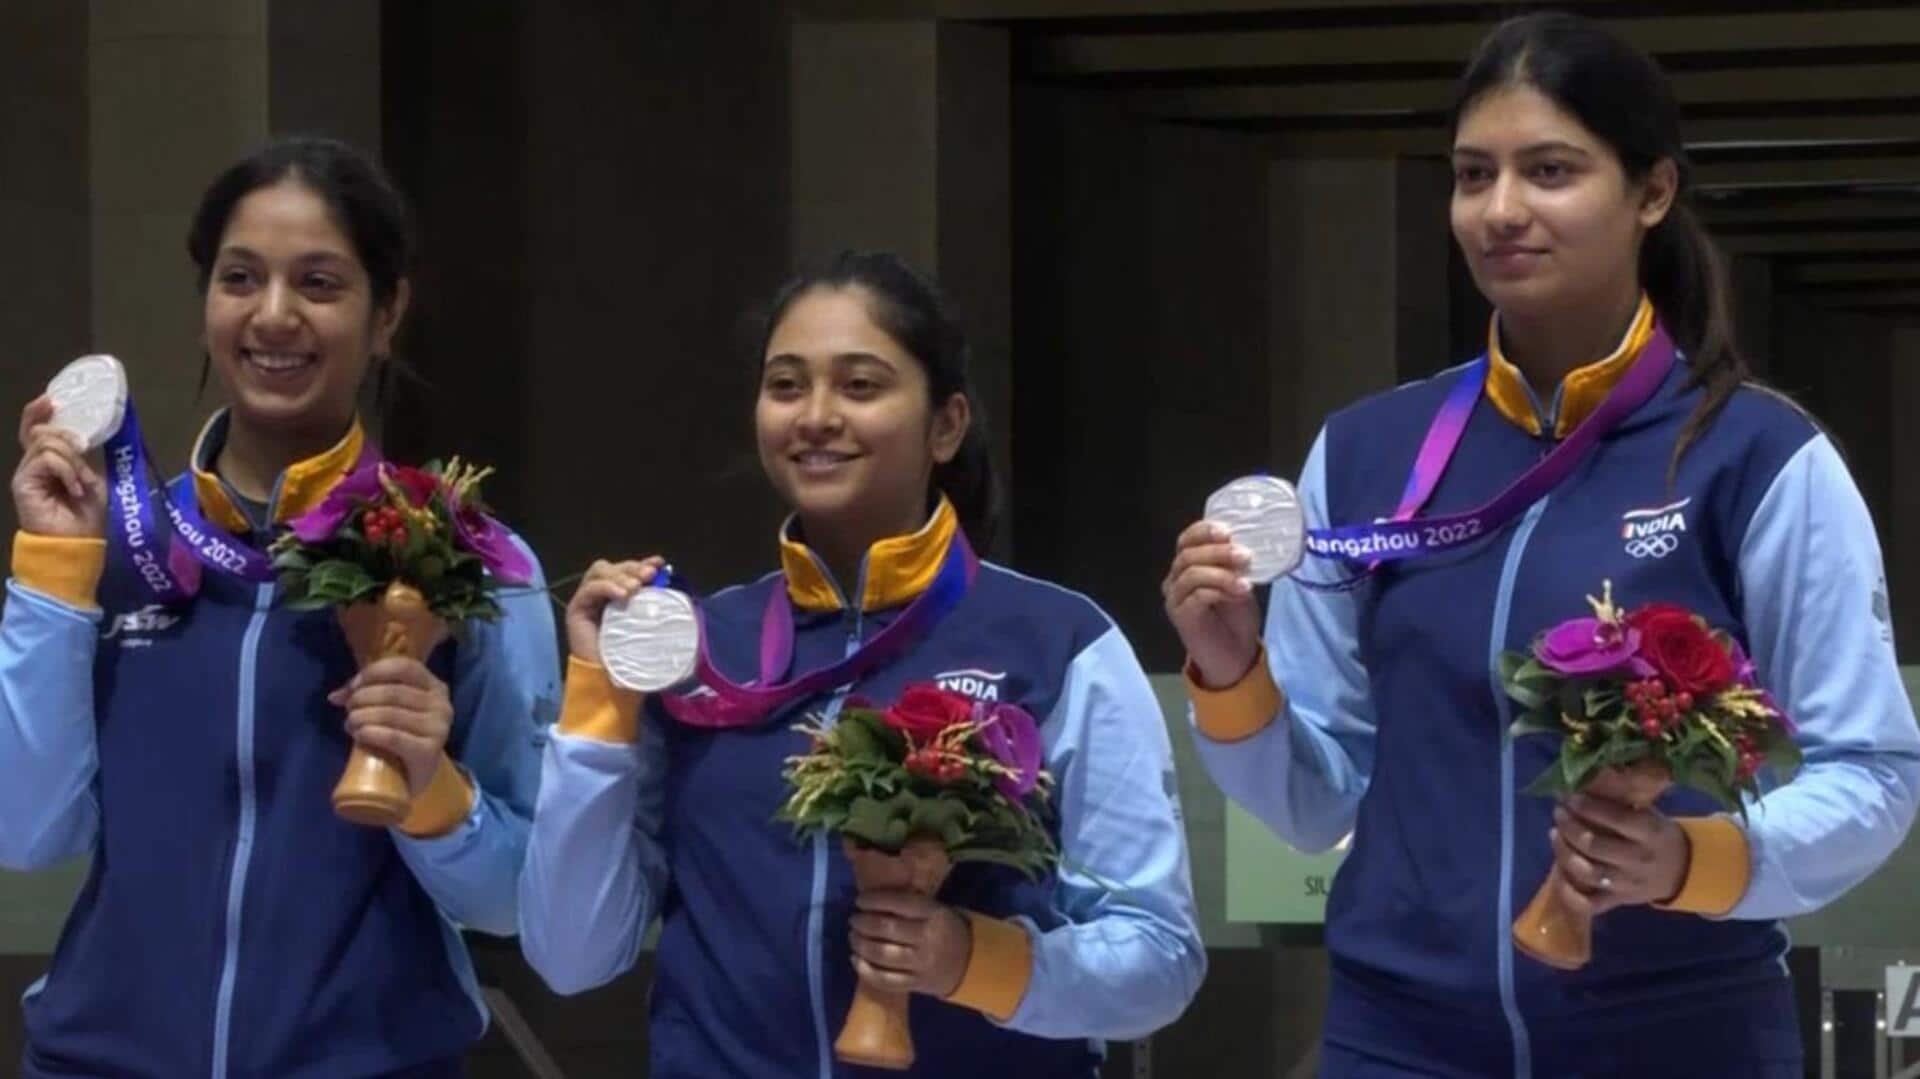 एशियाई खेल 2023: महिला शूटिंग टीम ने लगाया रजत पदक पर निशाना, क्रिकेट टीम फाइनल में